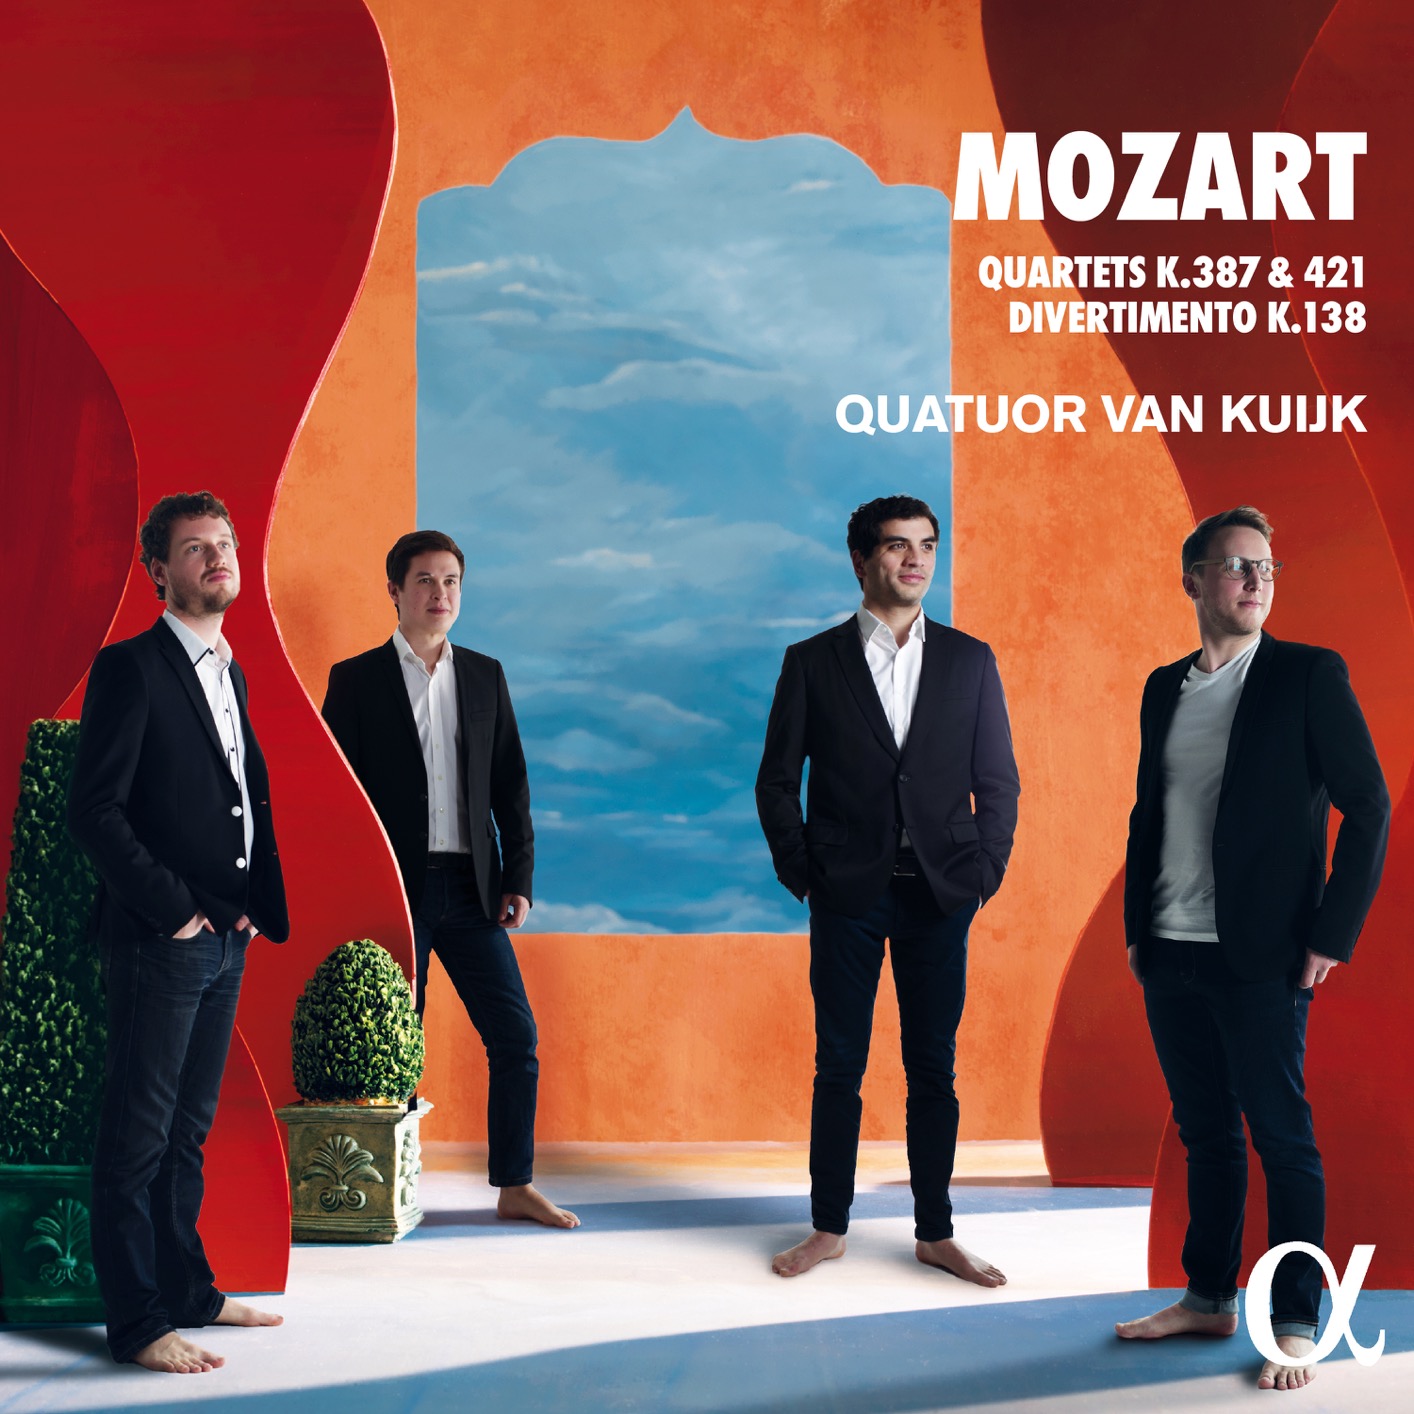 Quatuor Van Kuijk - Mozart: Quartets K.387, K.421 & Divertimento K.138 (2019) [FLAC 24bit/96kHz]